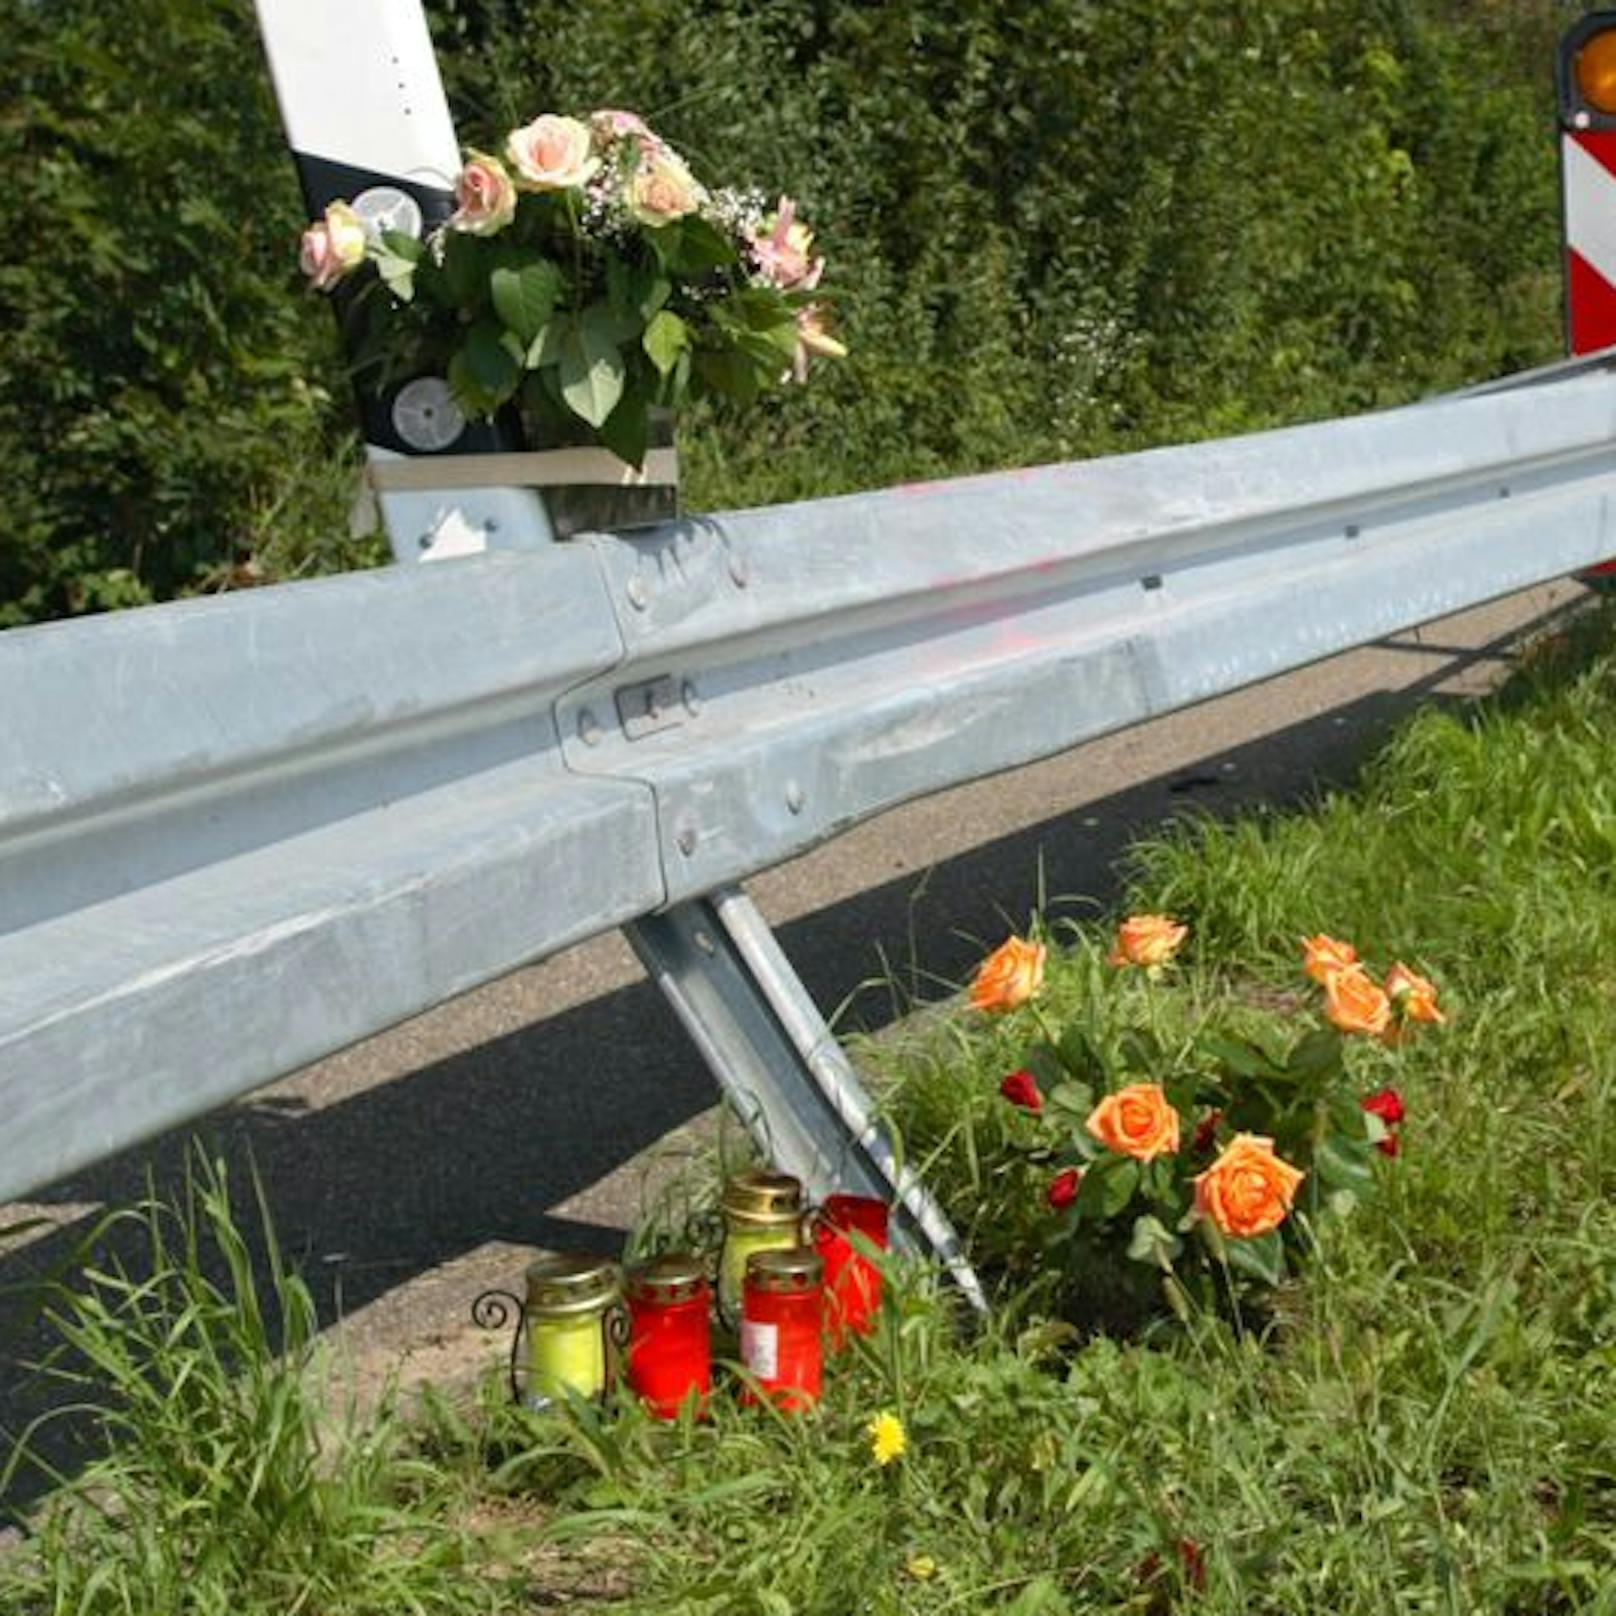 Am 10. September kam es in NÖ gleich zu zwei tödlichen Unfällen. Die Opfer waren Mitglieder der freiwilligen Feuerwehr. (Symbolbild)